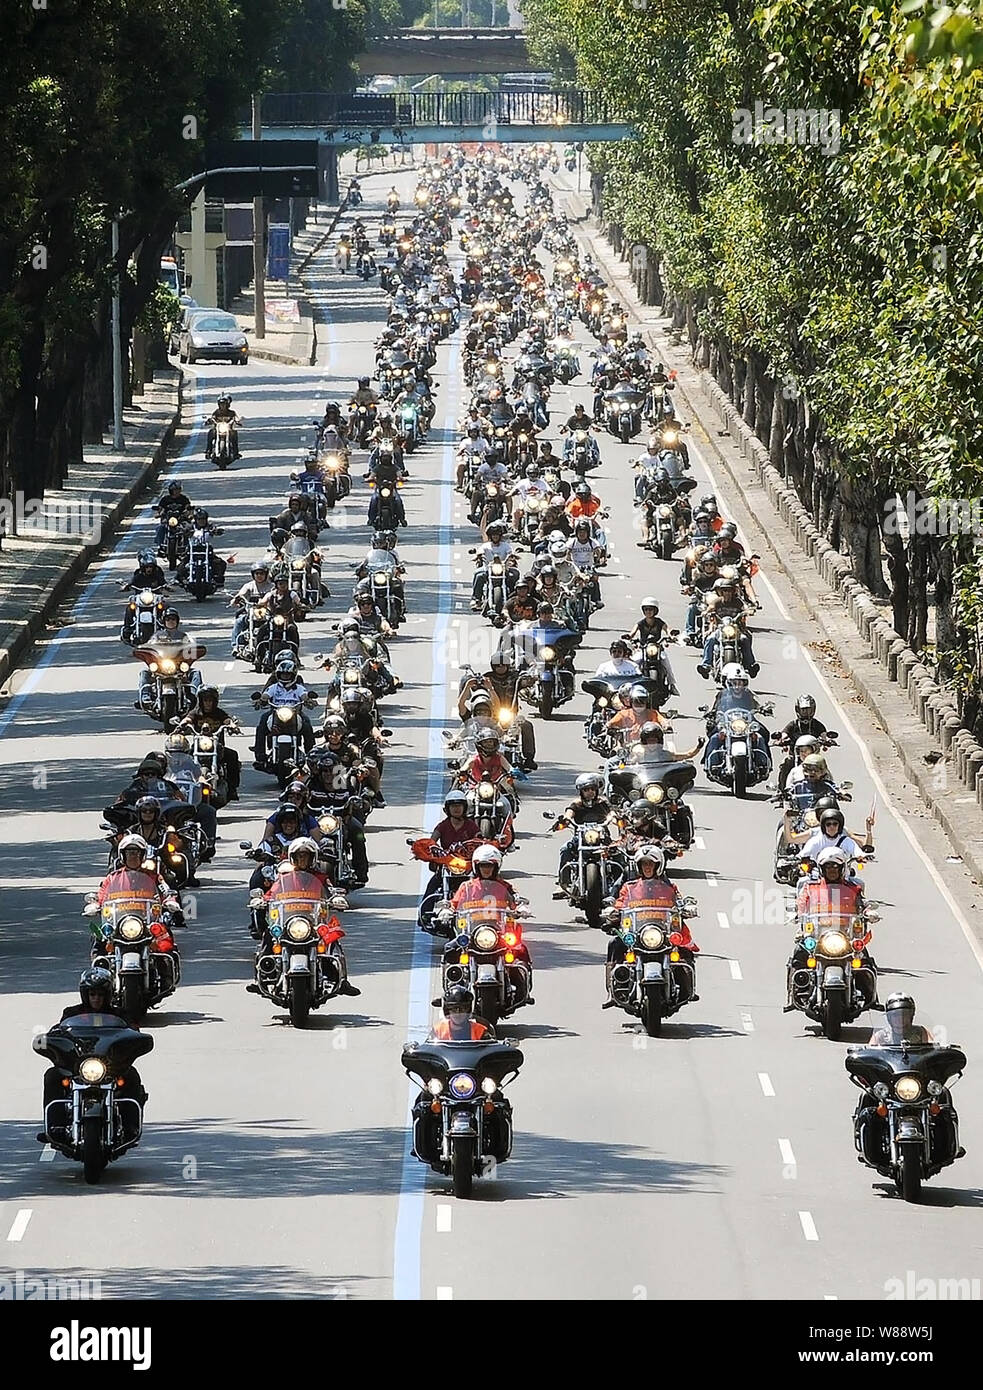 Río de Janeiro, 11 de diciembre de 2009. Los motociclistas con sus motos Harley Davidson rotar a través de las calles del centro de la ciudad de Río de Janeiro, Brasil Foto de stock